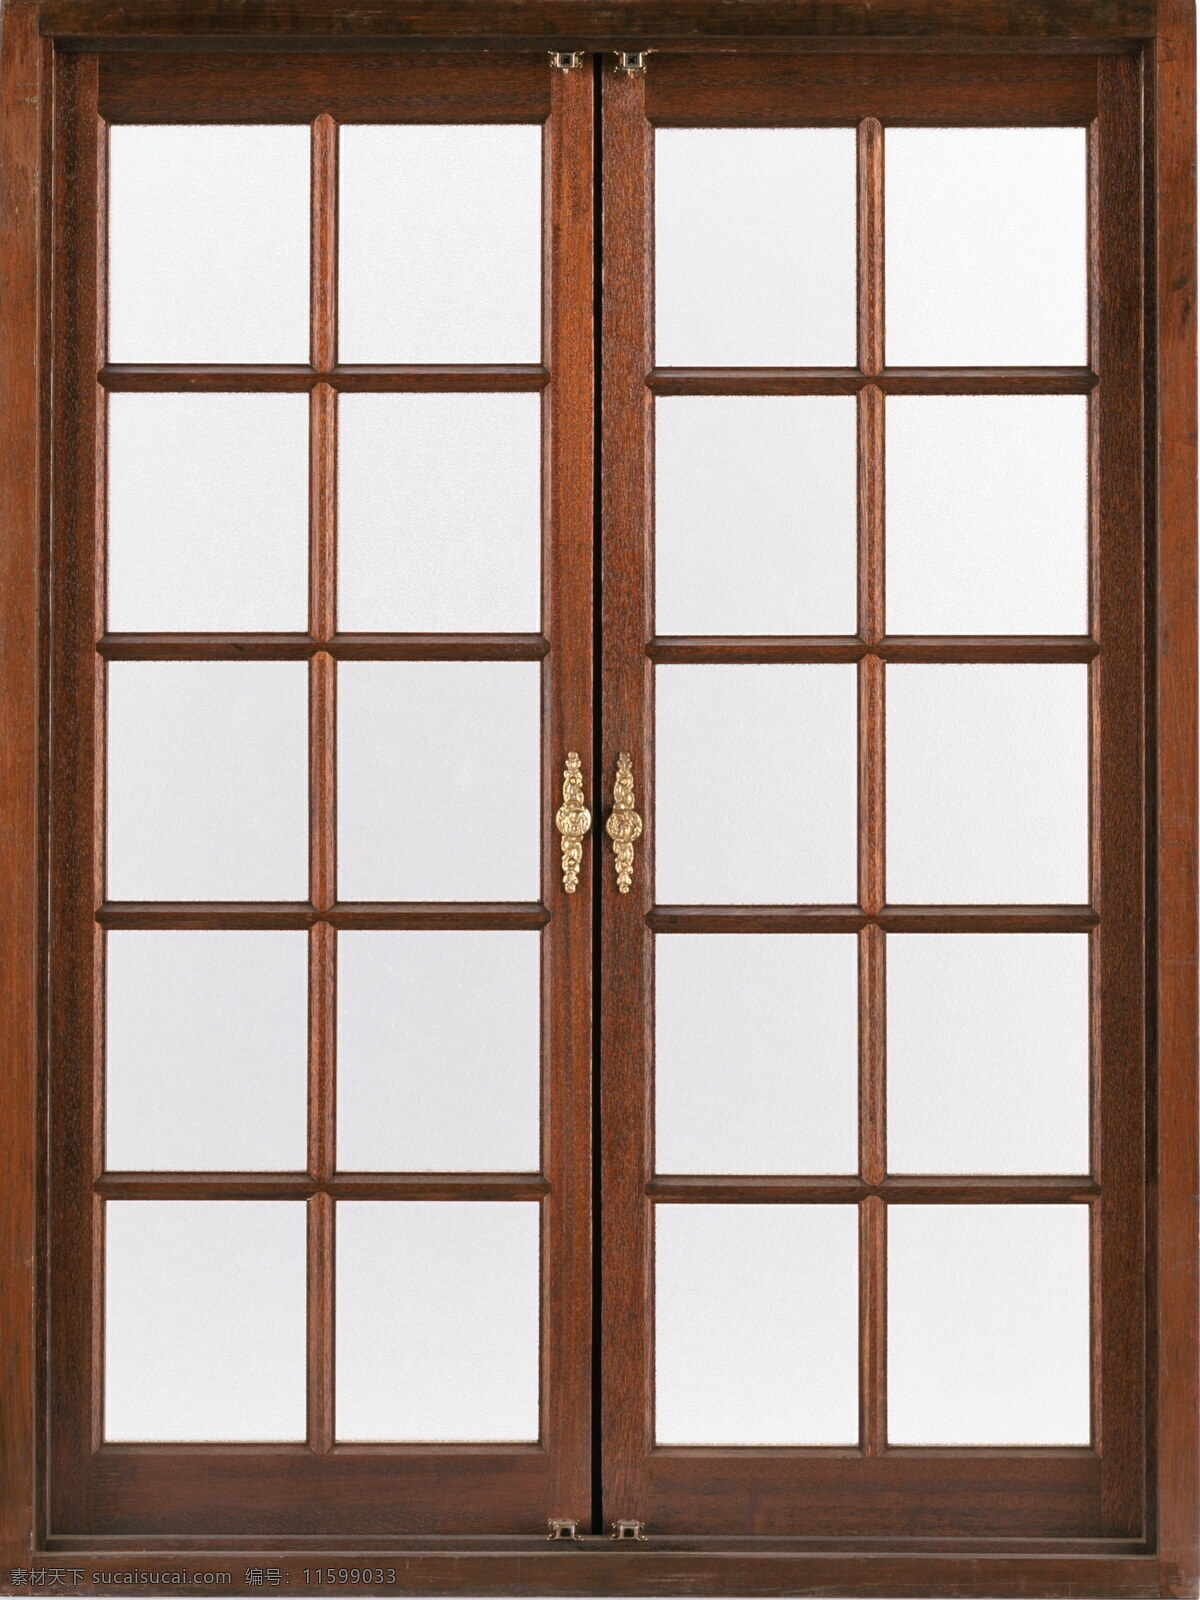 平开窗 贴图0101 贴图 设计素材 玻璃窗 贴图素材 建筑装饰 白色